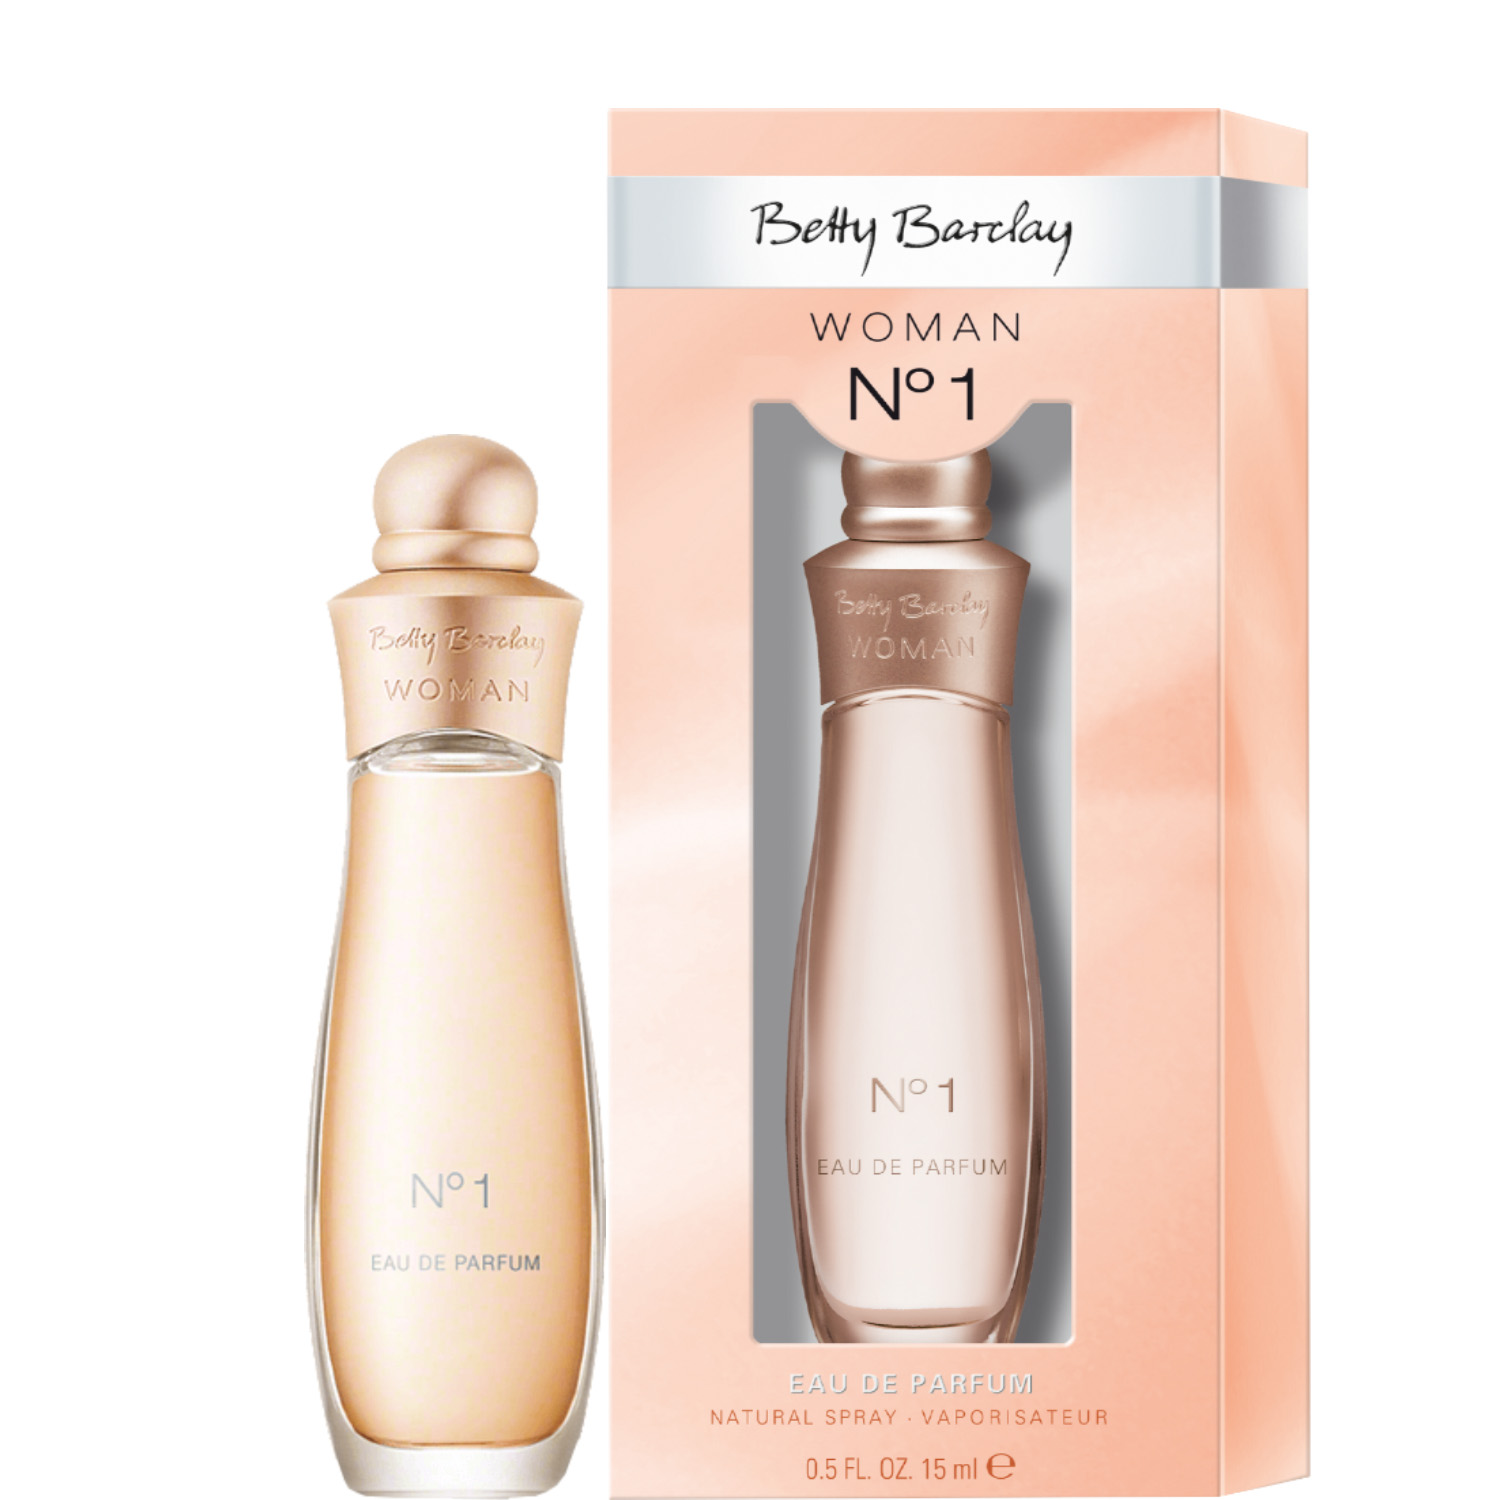 Betty Barclay Woman No.1 Eau de Parfum 15ml